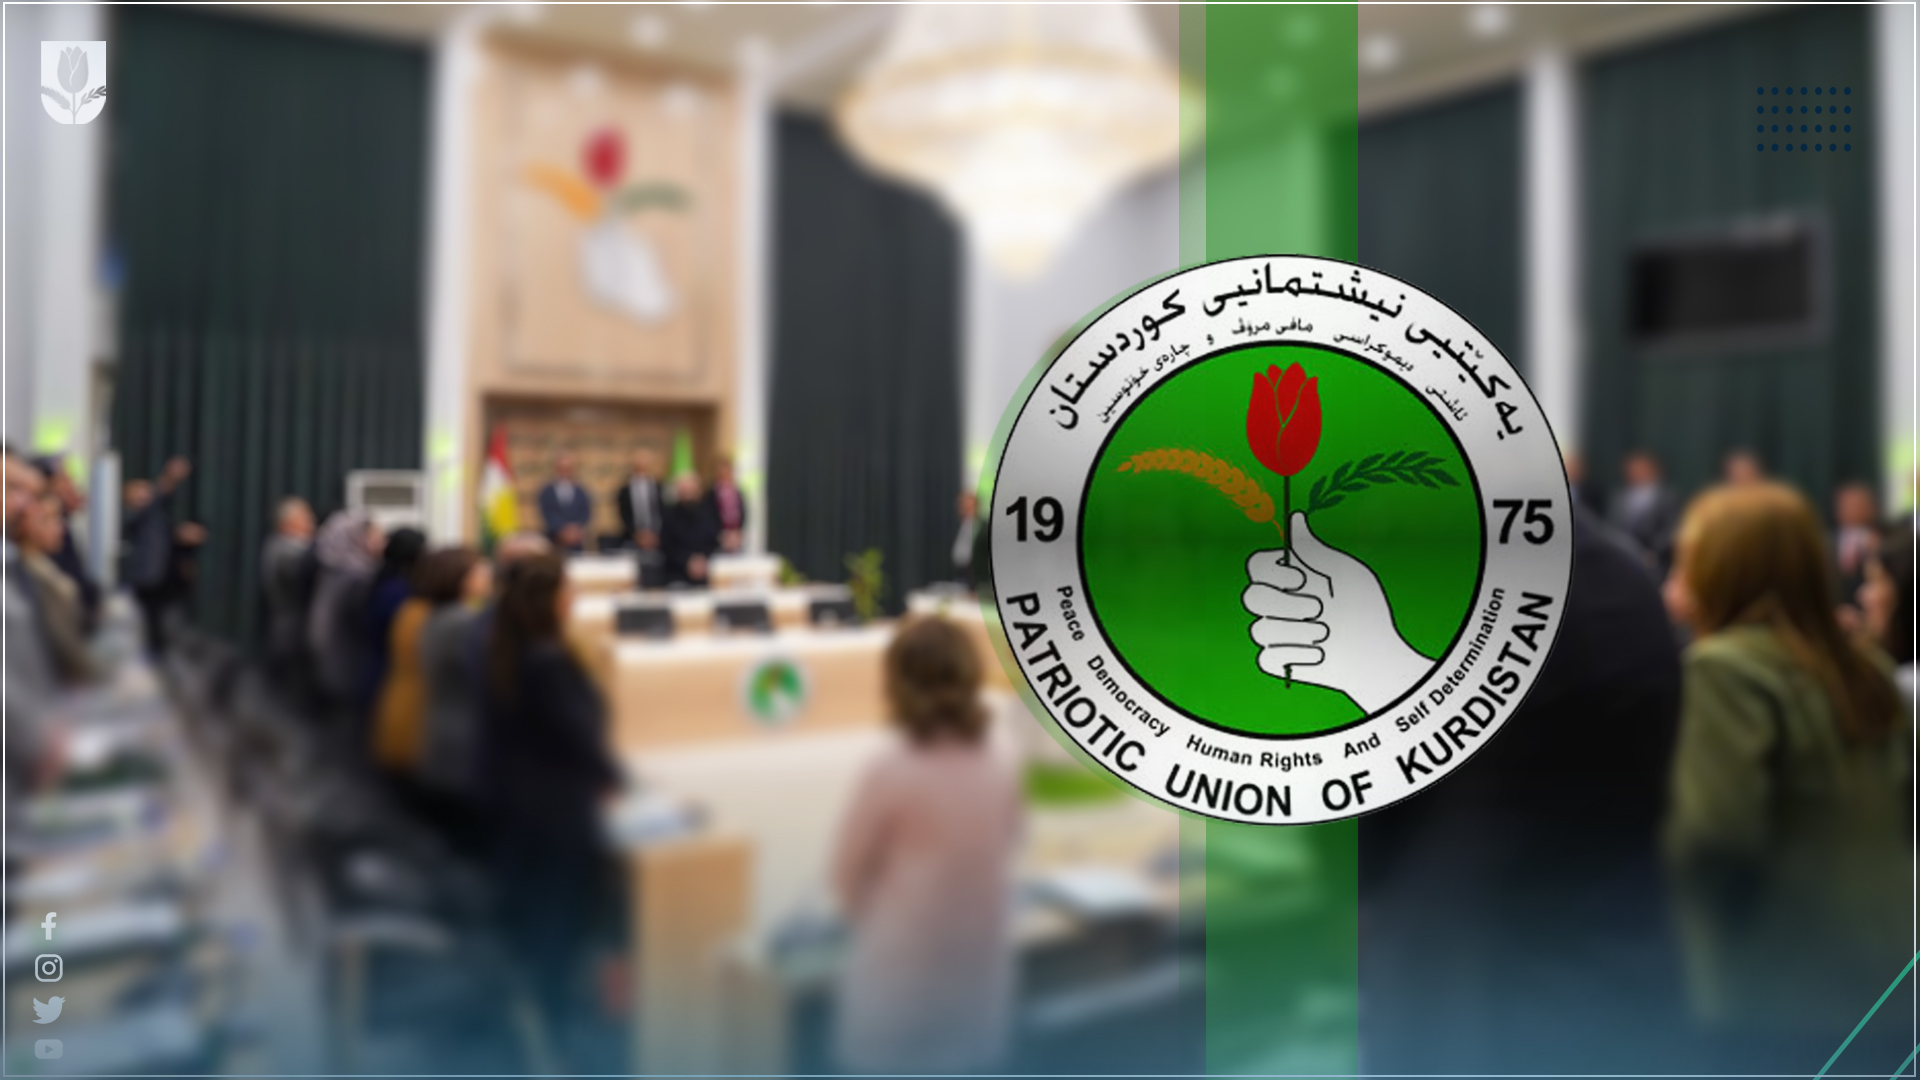 الاتحاد الوطني يطالب بتمثيل حقيقي للاقليات في برلمان كوردستان  